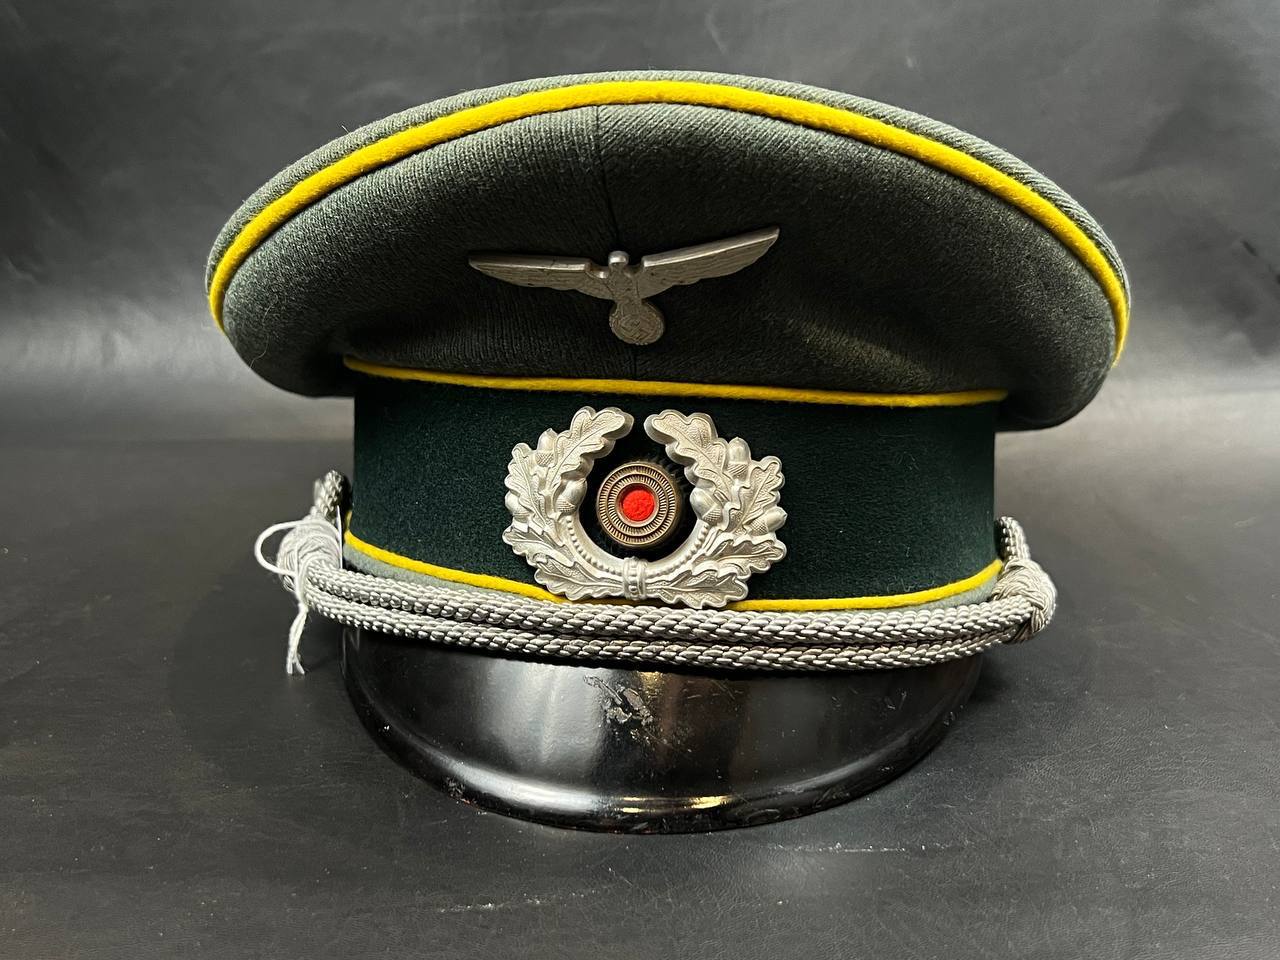 Фуражка связиста Вермахт (Army Signals Visor Hat)